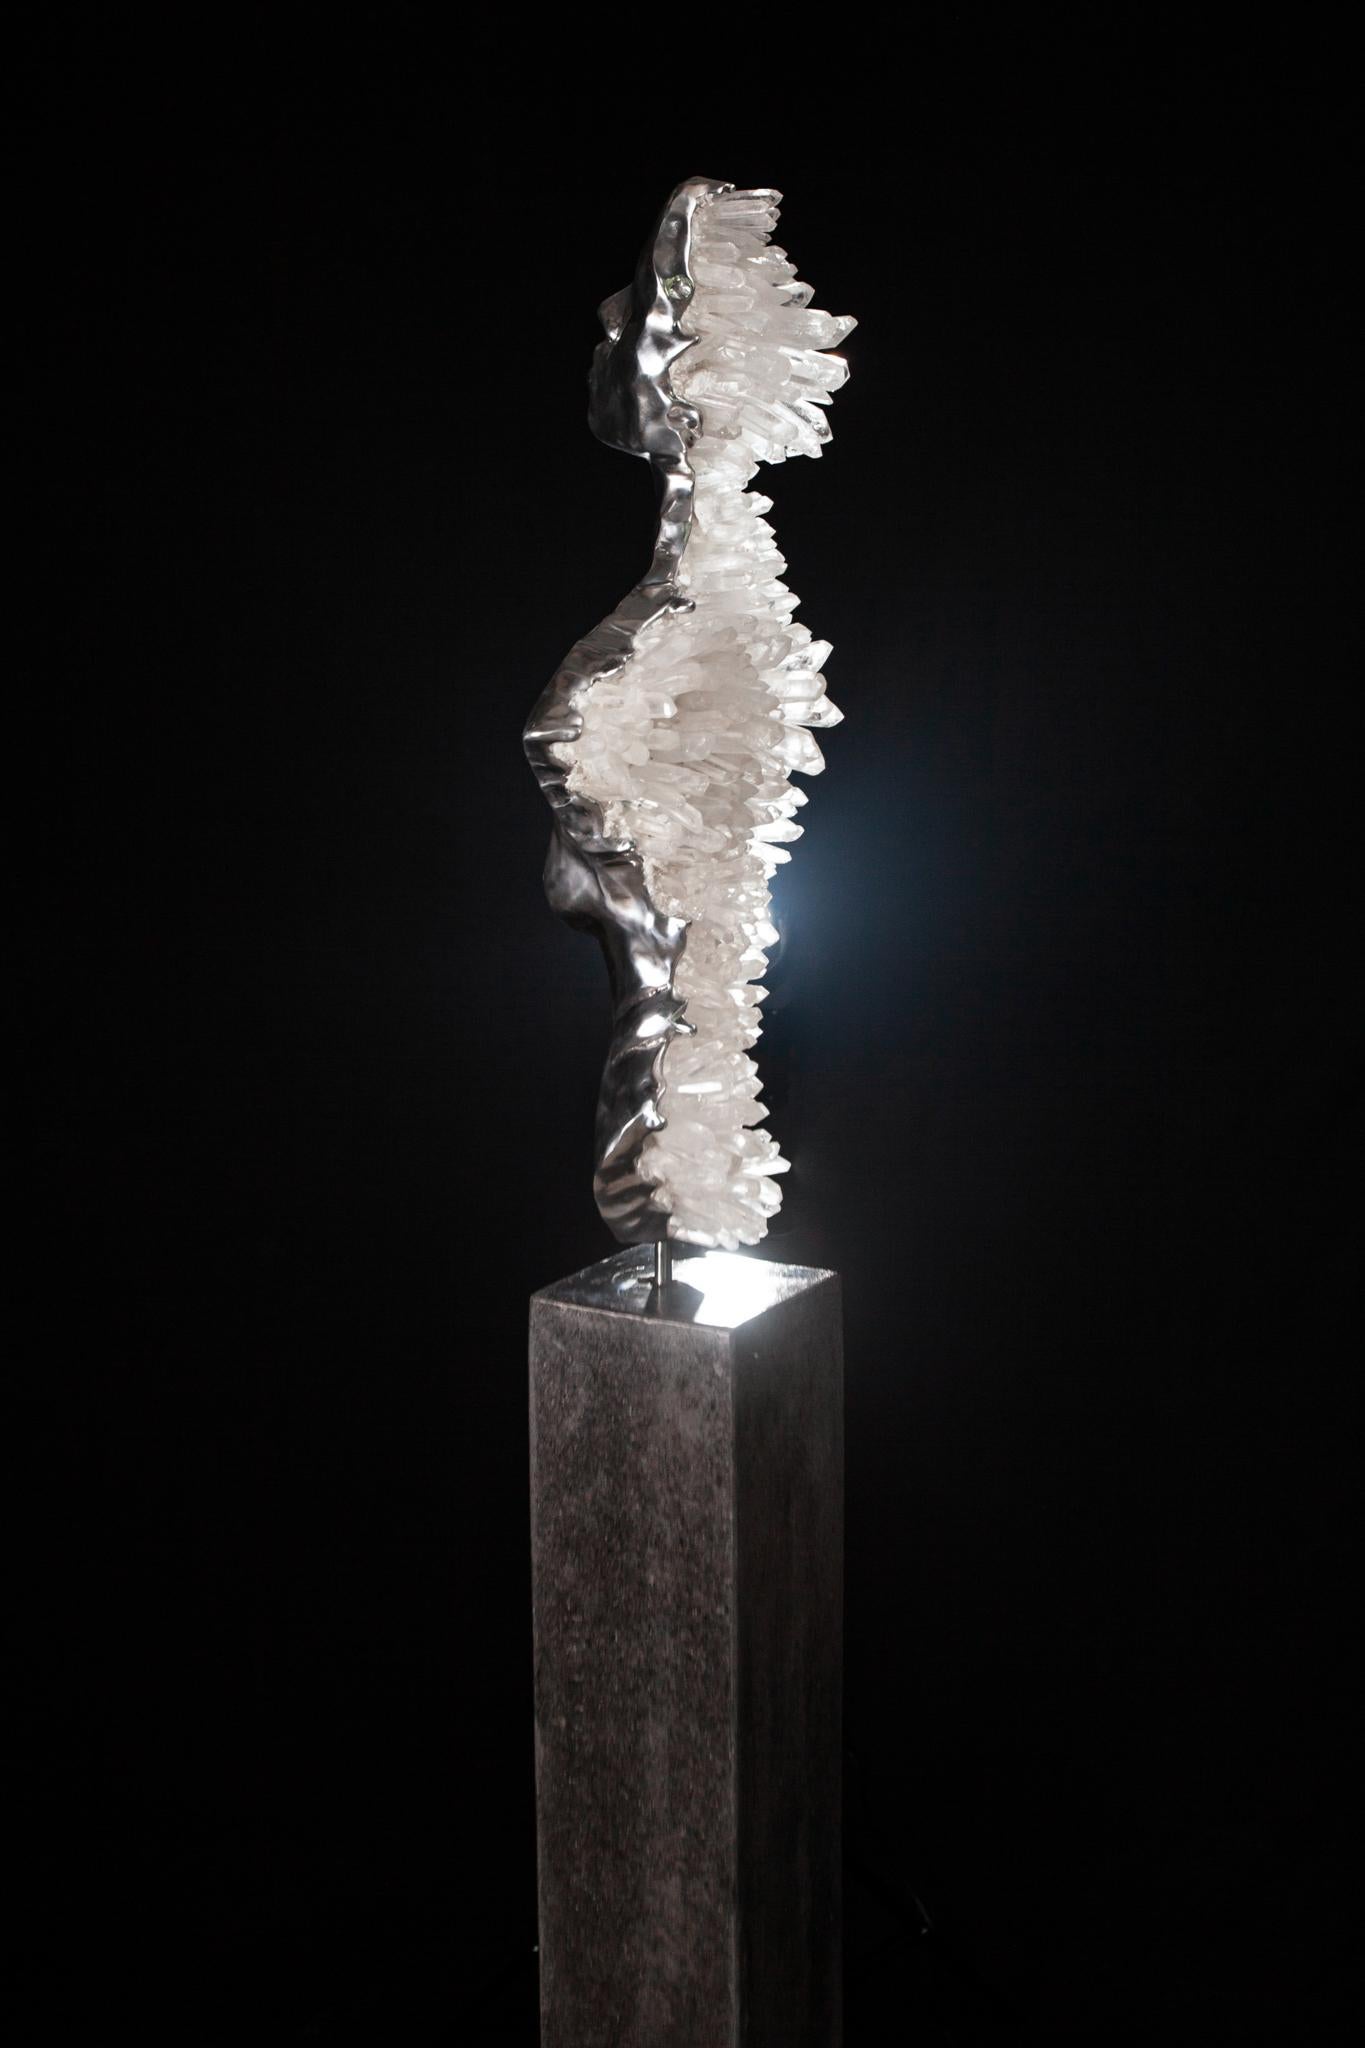 Die Skulptur ist aus patinierter Bronze mit natürlich vorkommenden Amethystkristallen. 

Einzigartige Ausgabe.
Halber Torso.

Der Sockel aus Zement ist ein Unikat, das im Studio unter den wachsamen Augen des Künstlers handgefertigt wird.

Bei dem